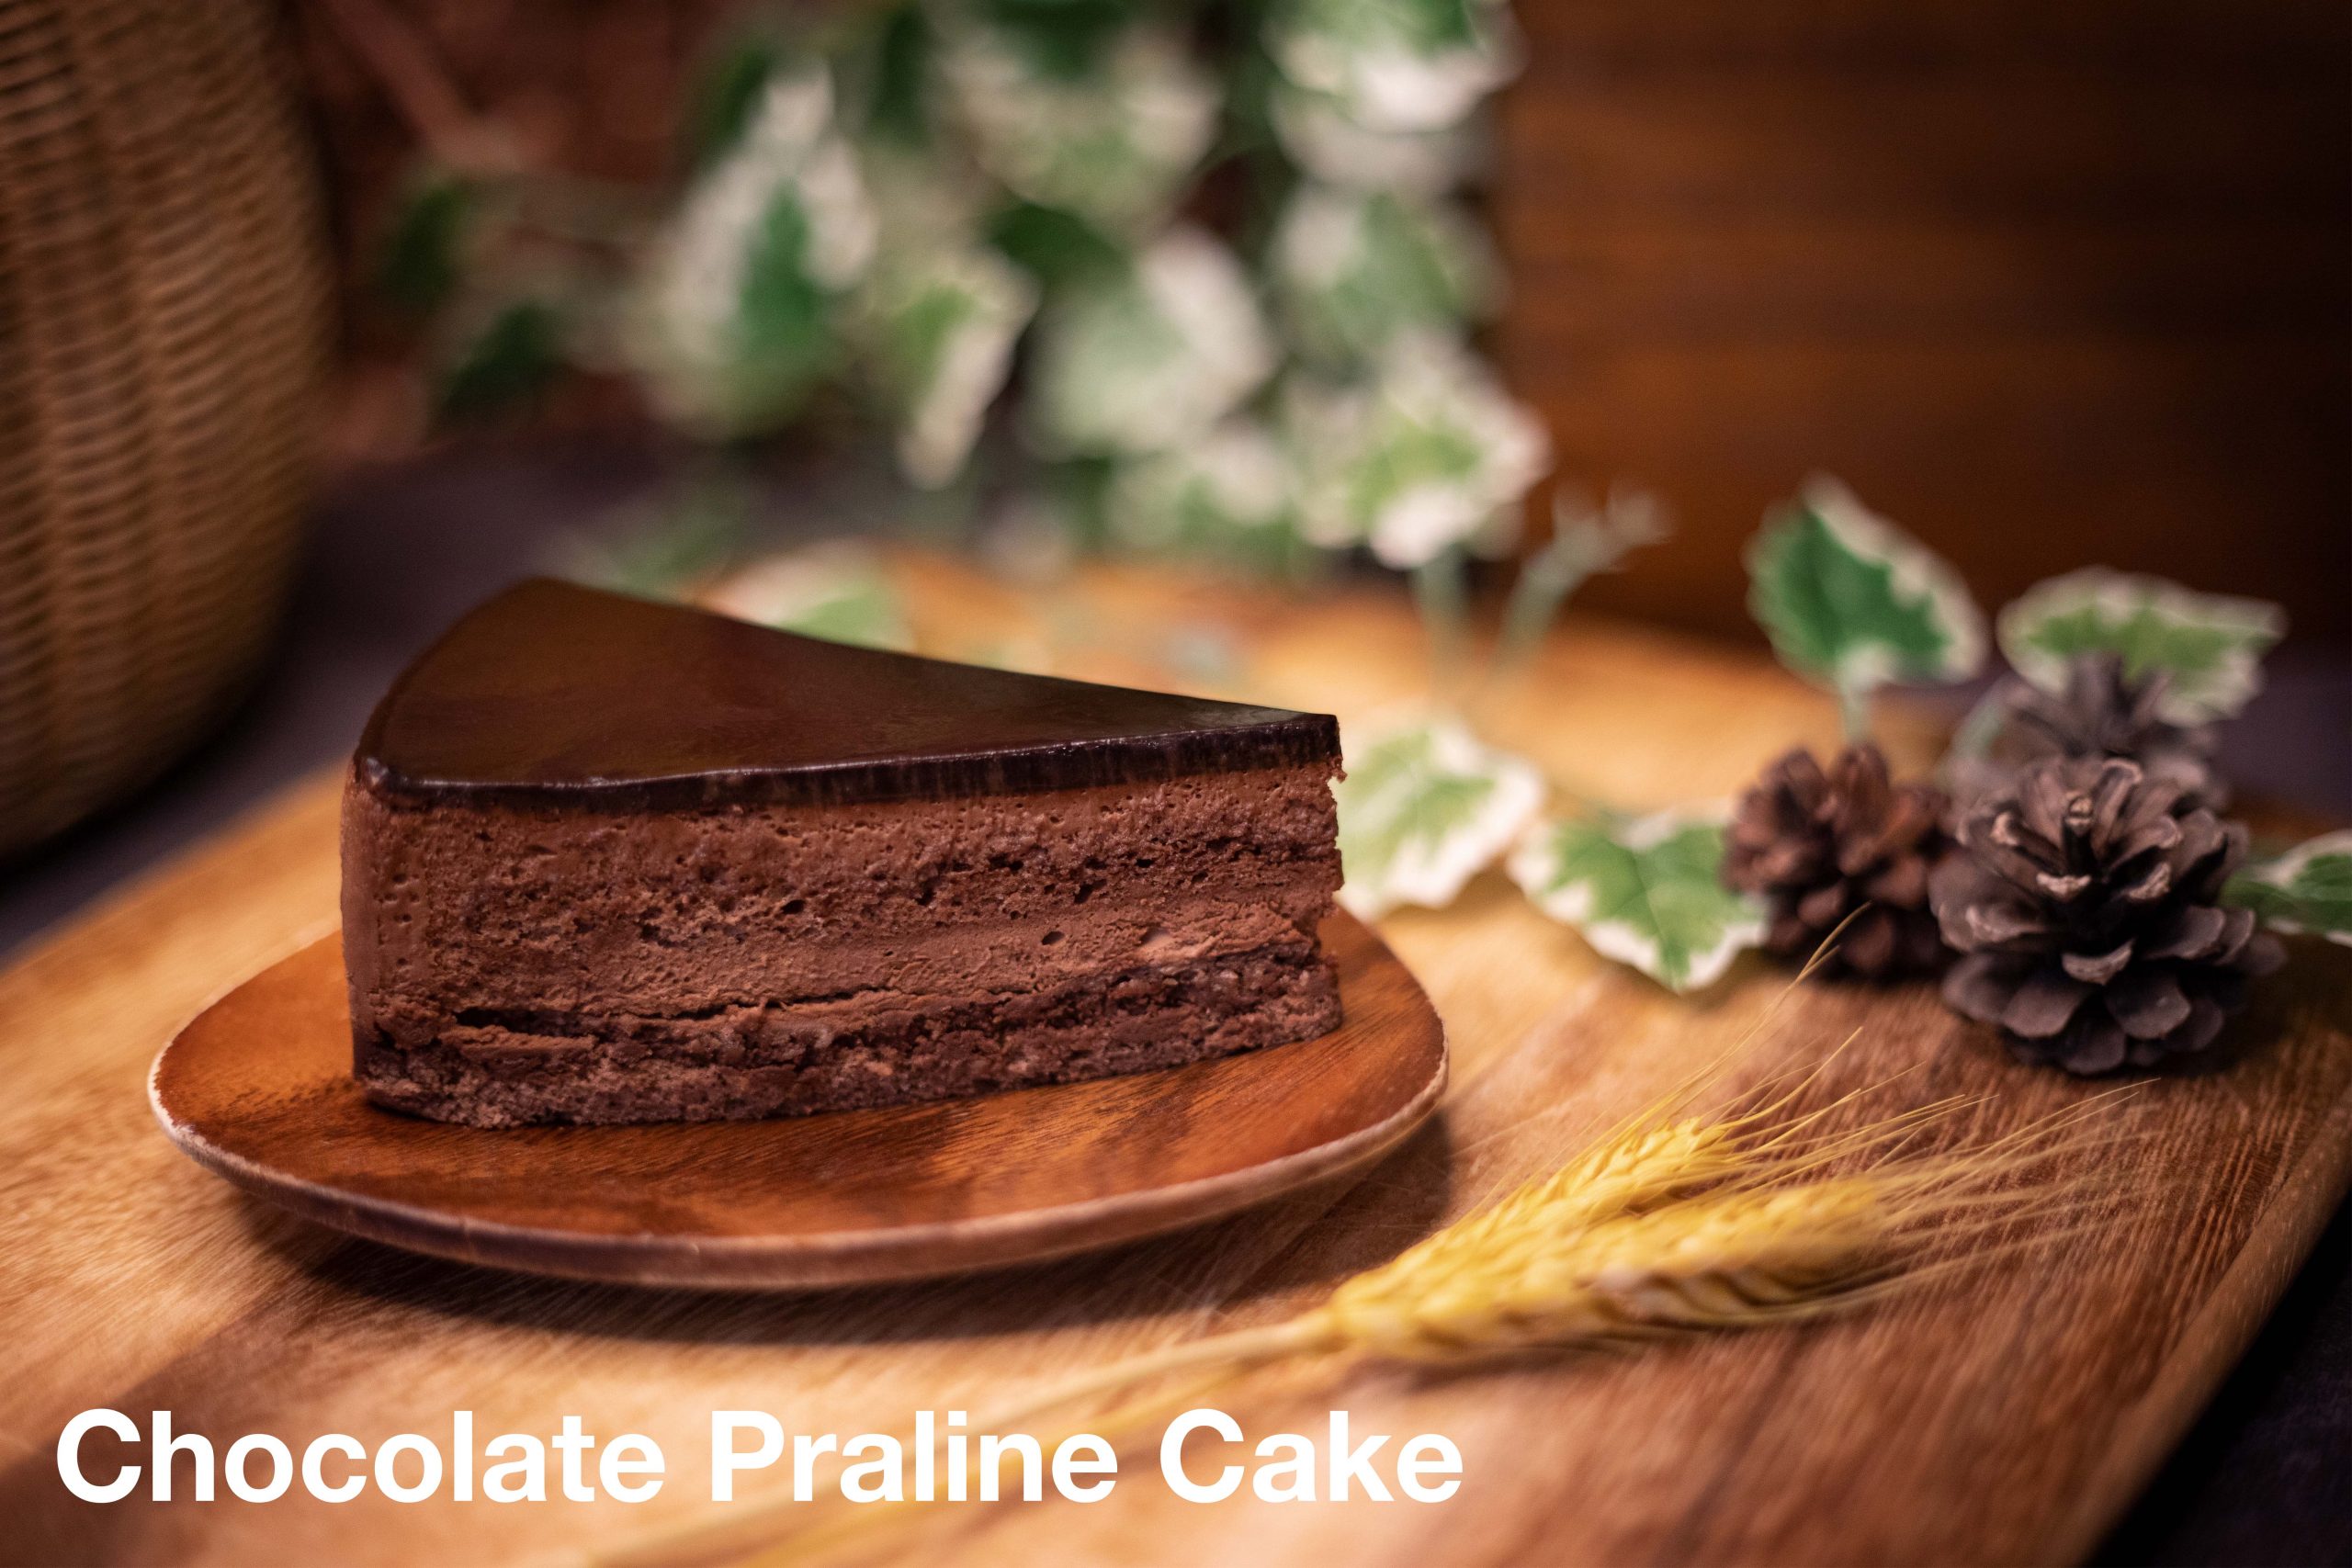 Share 65+ chocolate praline cake super hot - in.daotaonec